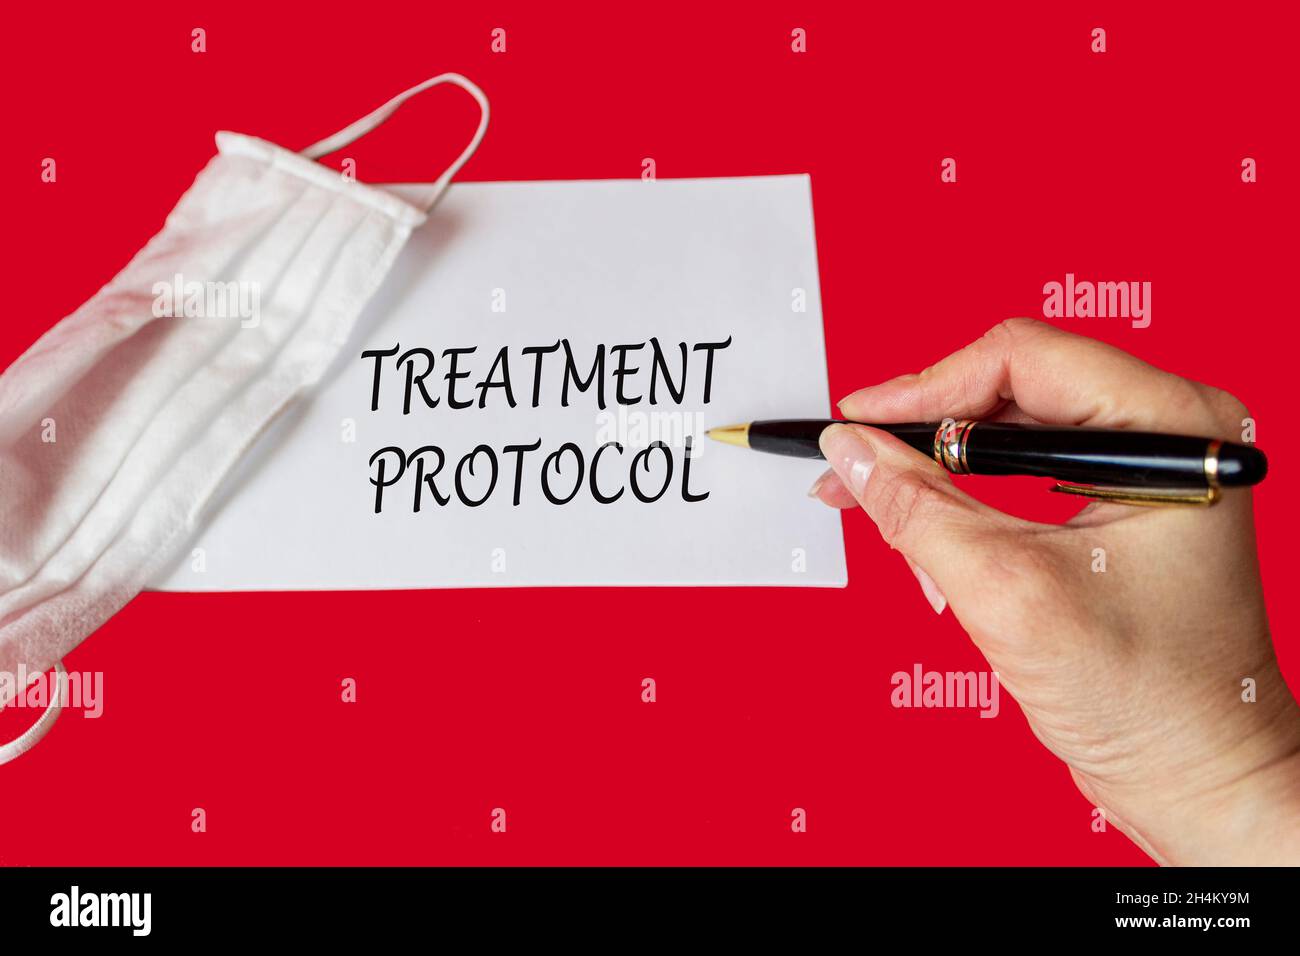 Das Wort Behandlungsprotokoll wird von einem Arzt auf einem roten Hintergrund in der Nähe einer medizinischen Schutzmaske geschrieben. Medizinisches Konzept Stockfoto